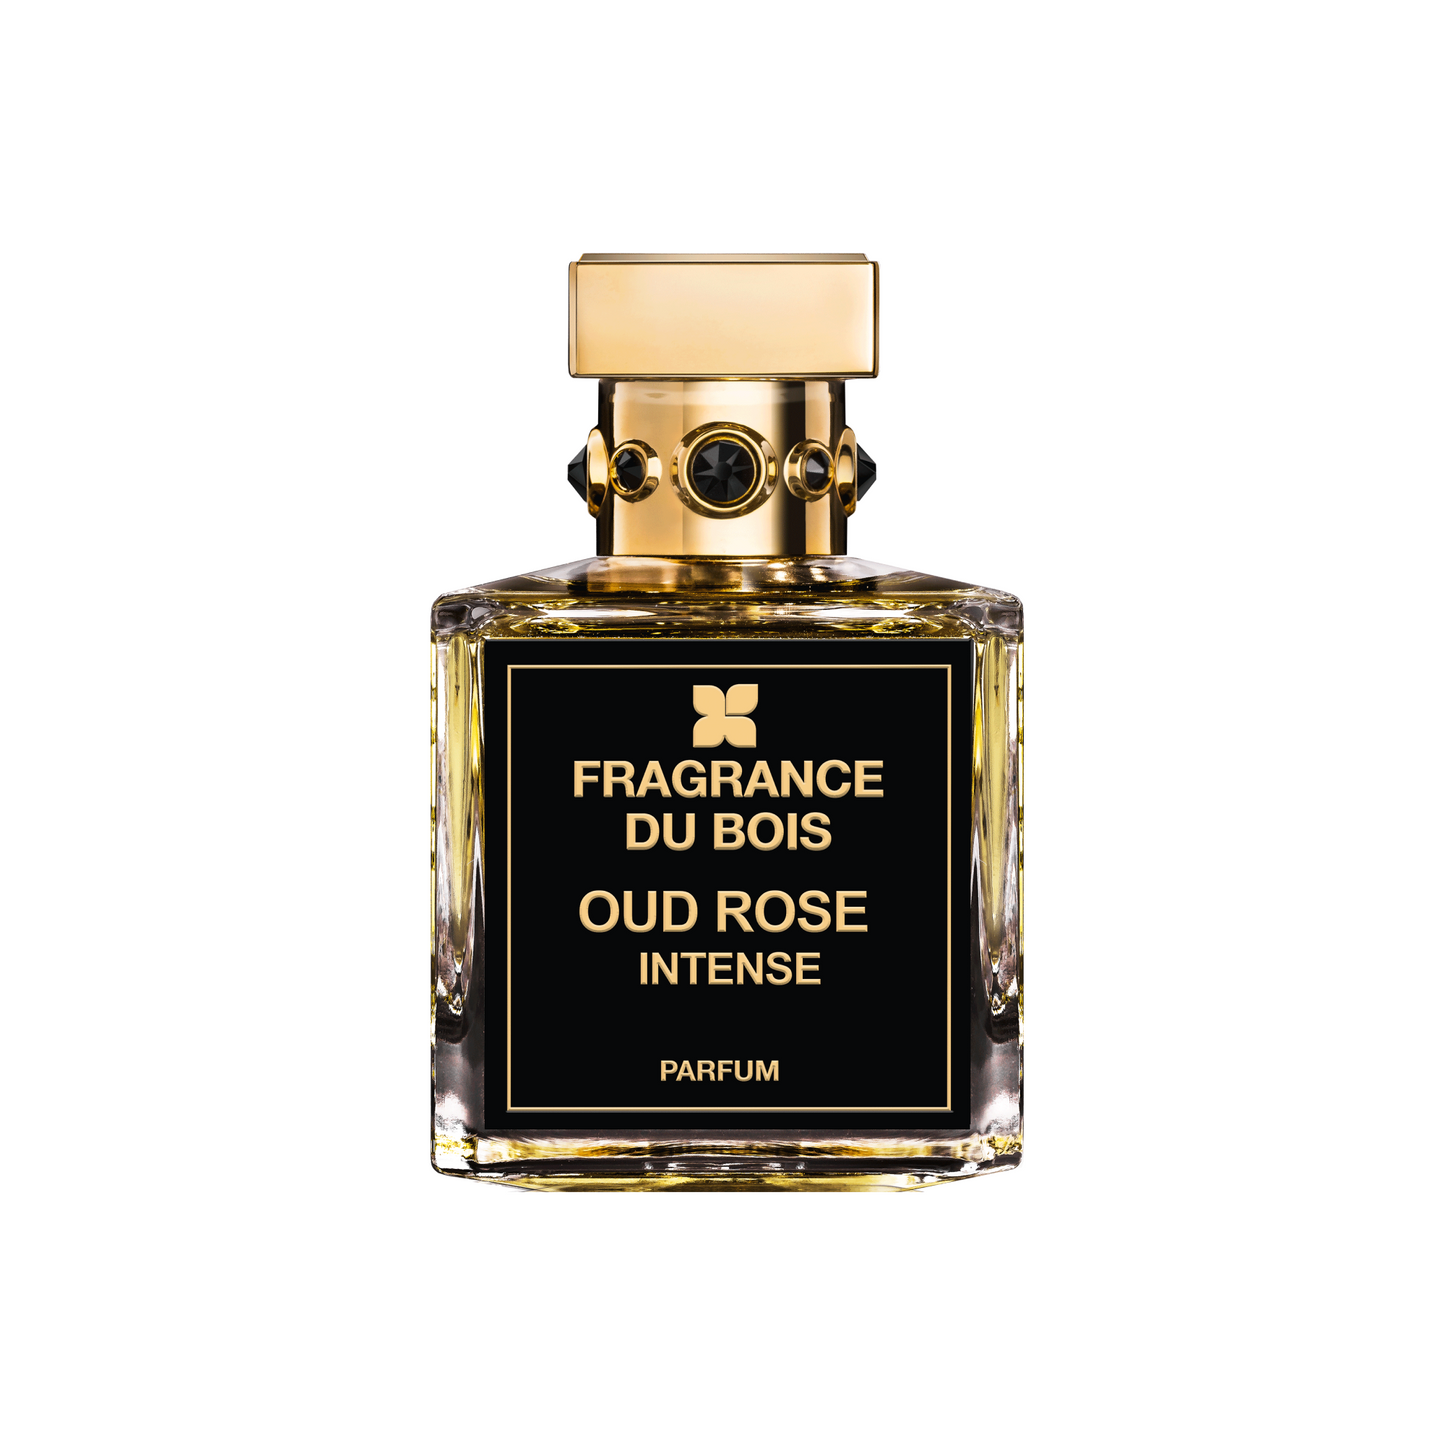 OUD ROSE INTENSE 1.7oz Eau De Parfum